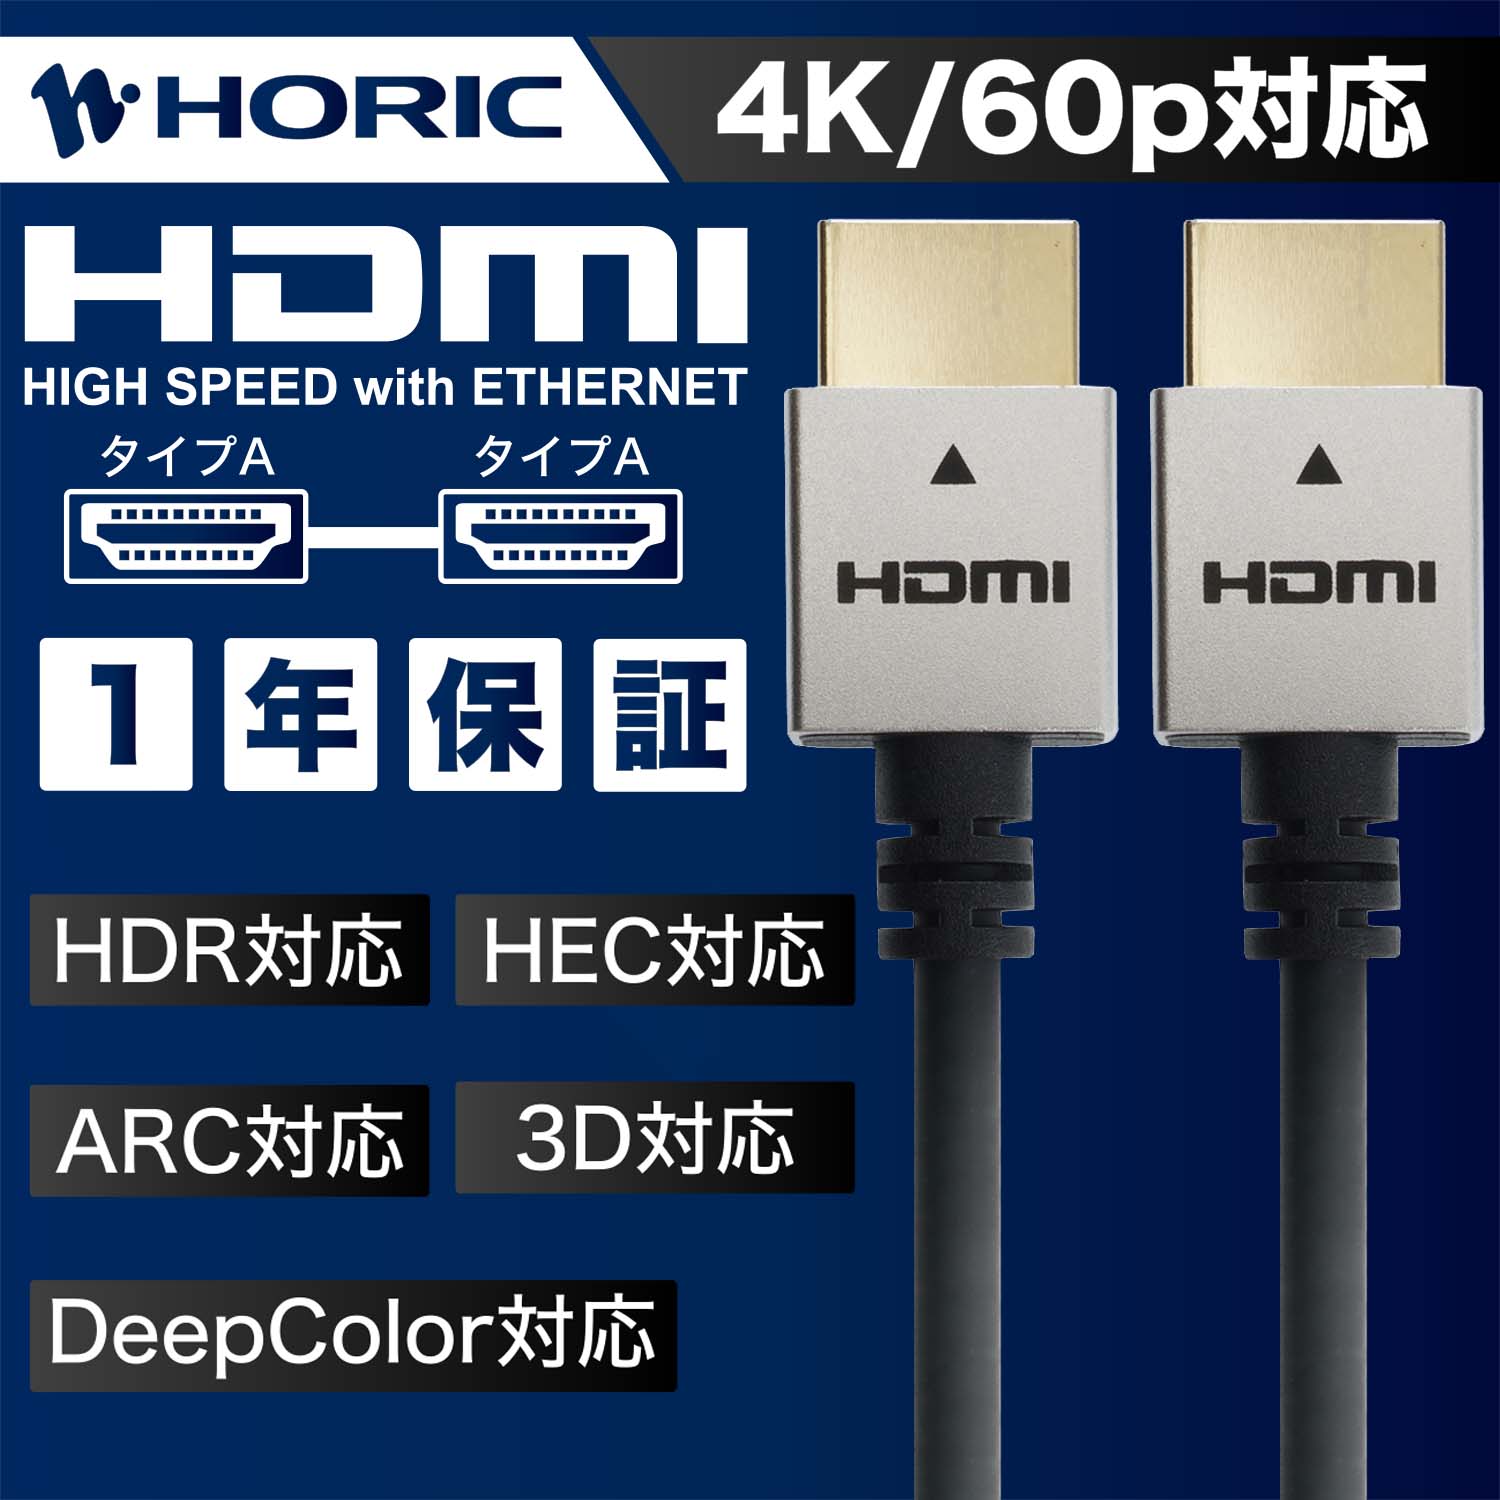 最高品質の Ver1.4 HDMIケーブル 10m 4K 30p対応 パッシブケーブル 3重シールドケーブル 金メッキ端子 テレビ ゲーム機の接続等  ホーリック HORIC HDM100-886SV シンプルで高級感のあるアルミヘッド仕様